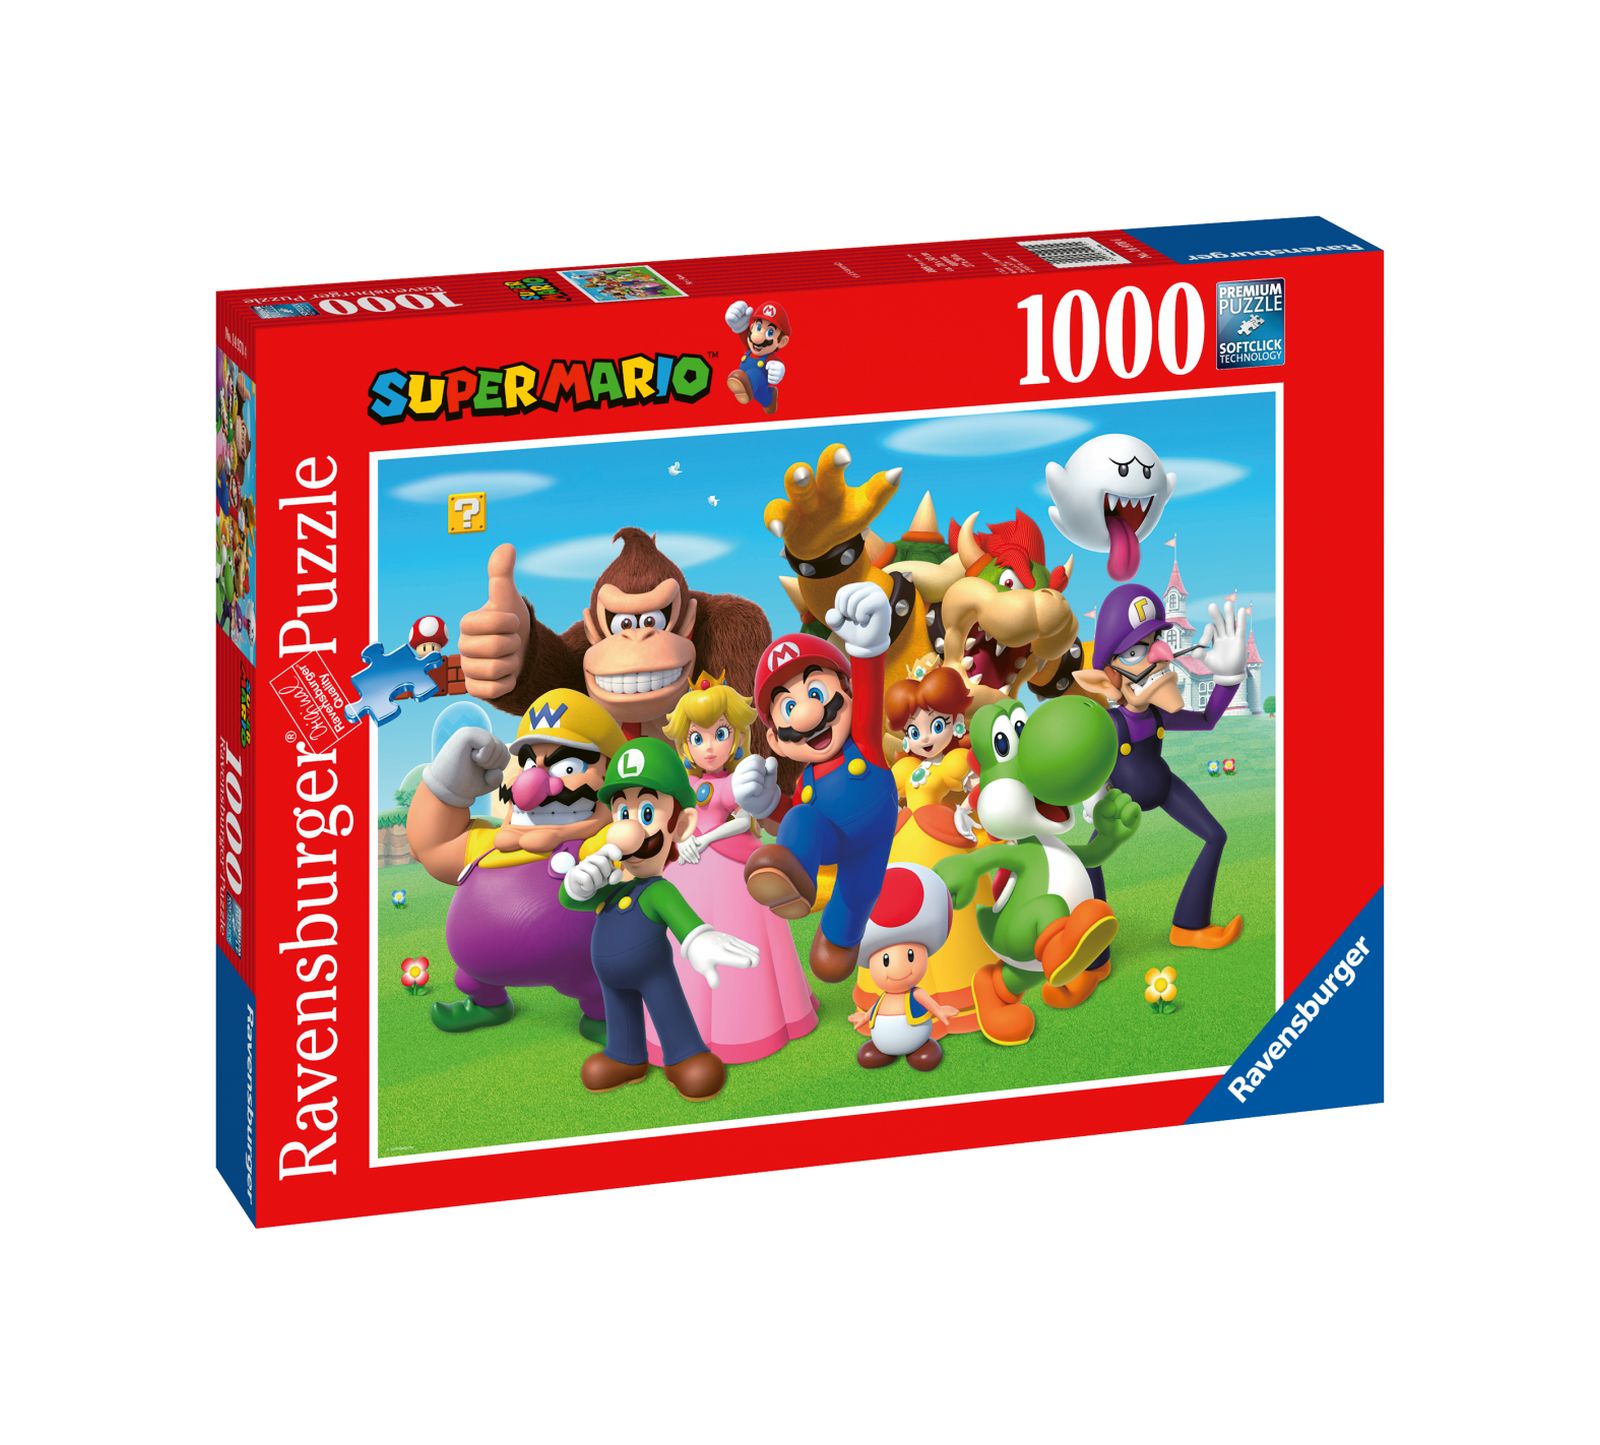 Ravensburger puzzle 1000 pezzi super mario - RAVENSBURGER, Super Mario